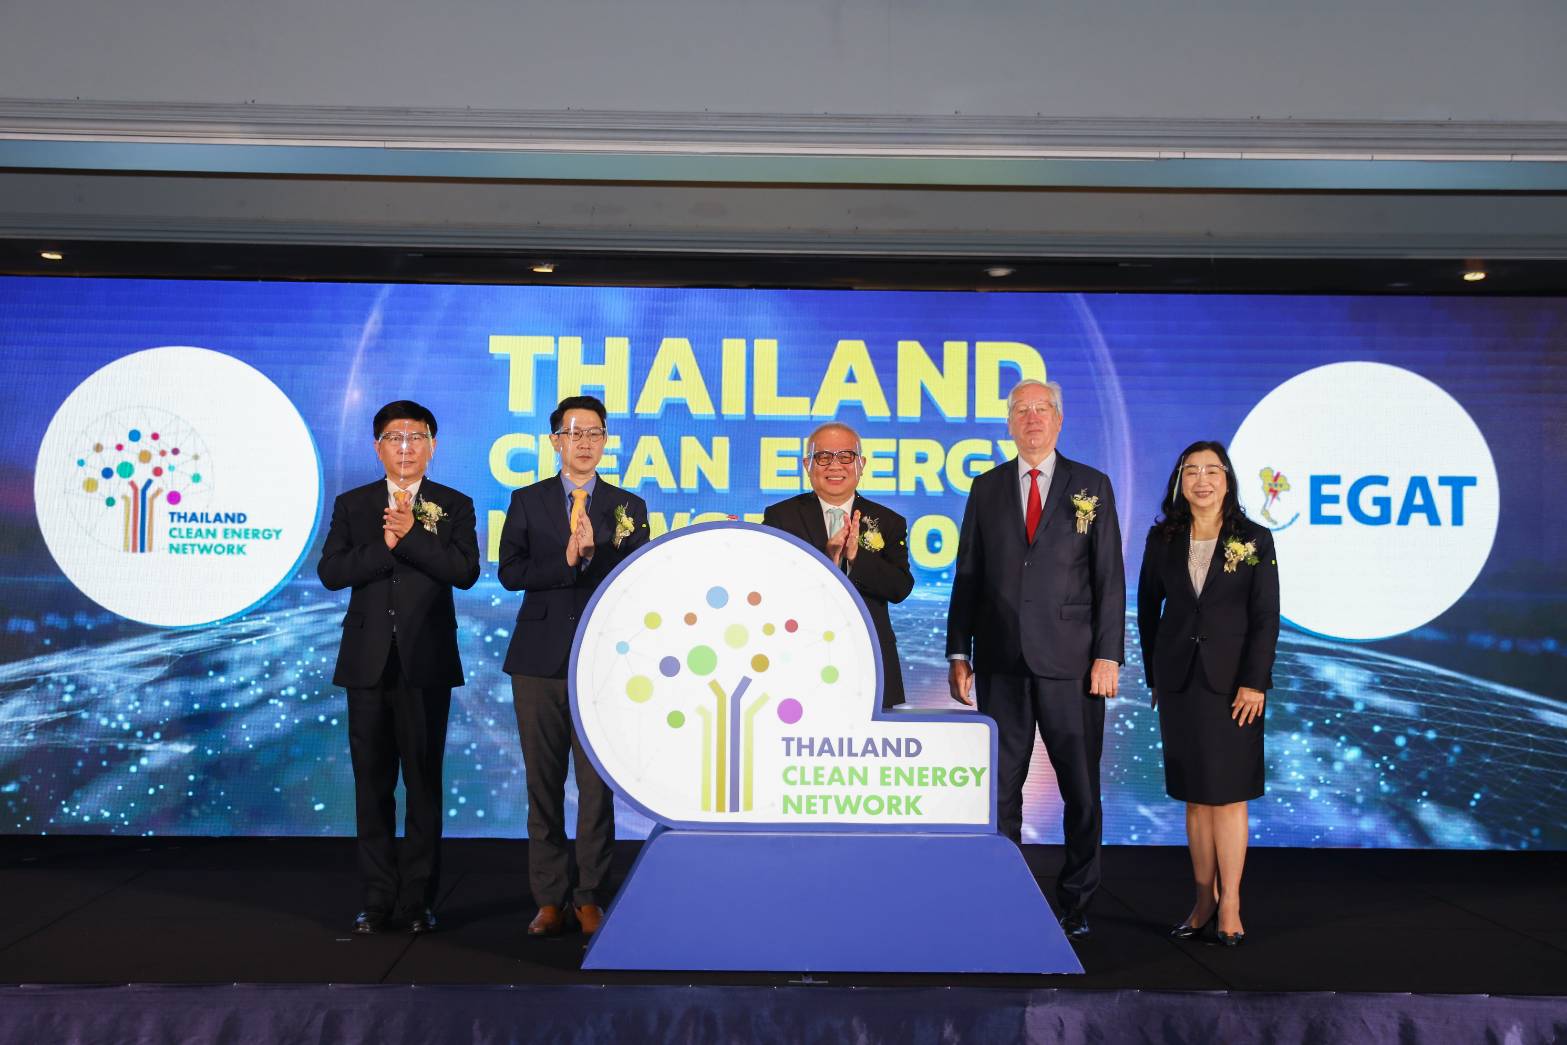 กฟผ. ปั้นเครือข่าย Thailand Clean Energy Network ชูซื้อขายเครดิตพลังงาน (REC) หนุนไทยลดก๊าซเรือนกระจกตามเป้า NDC